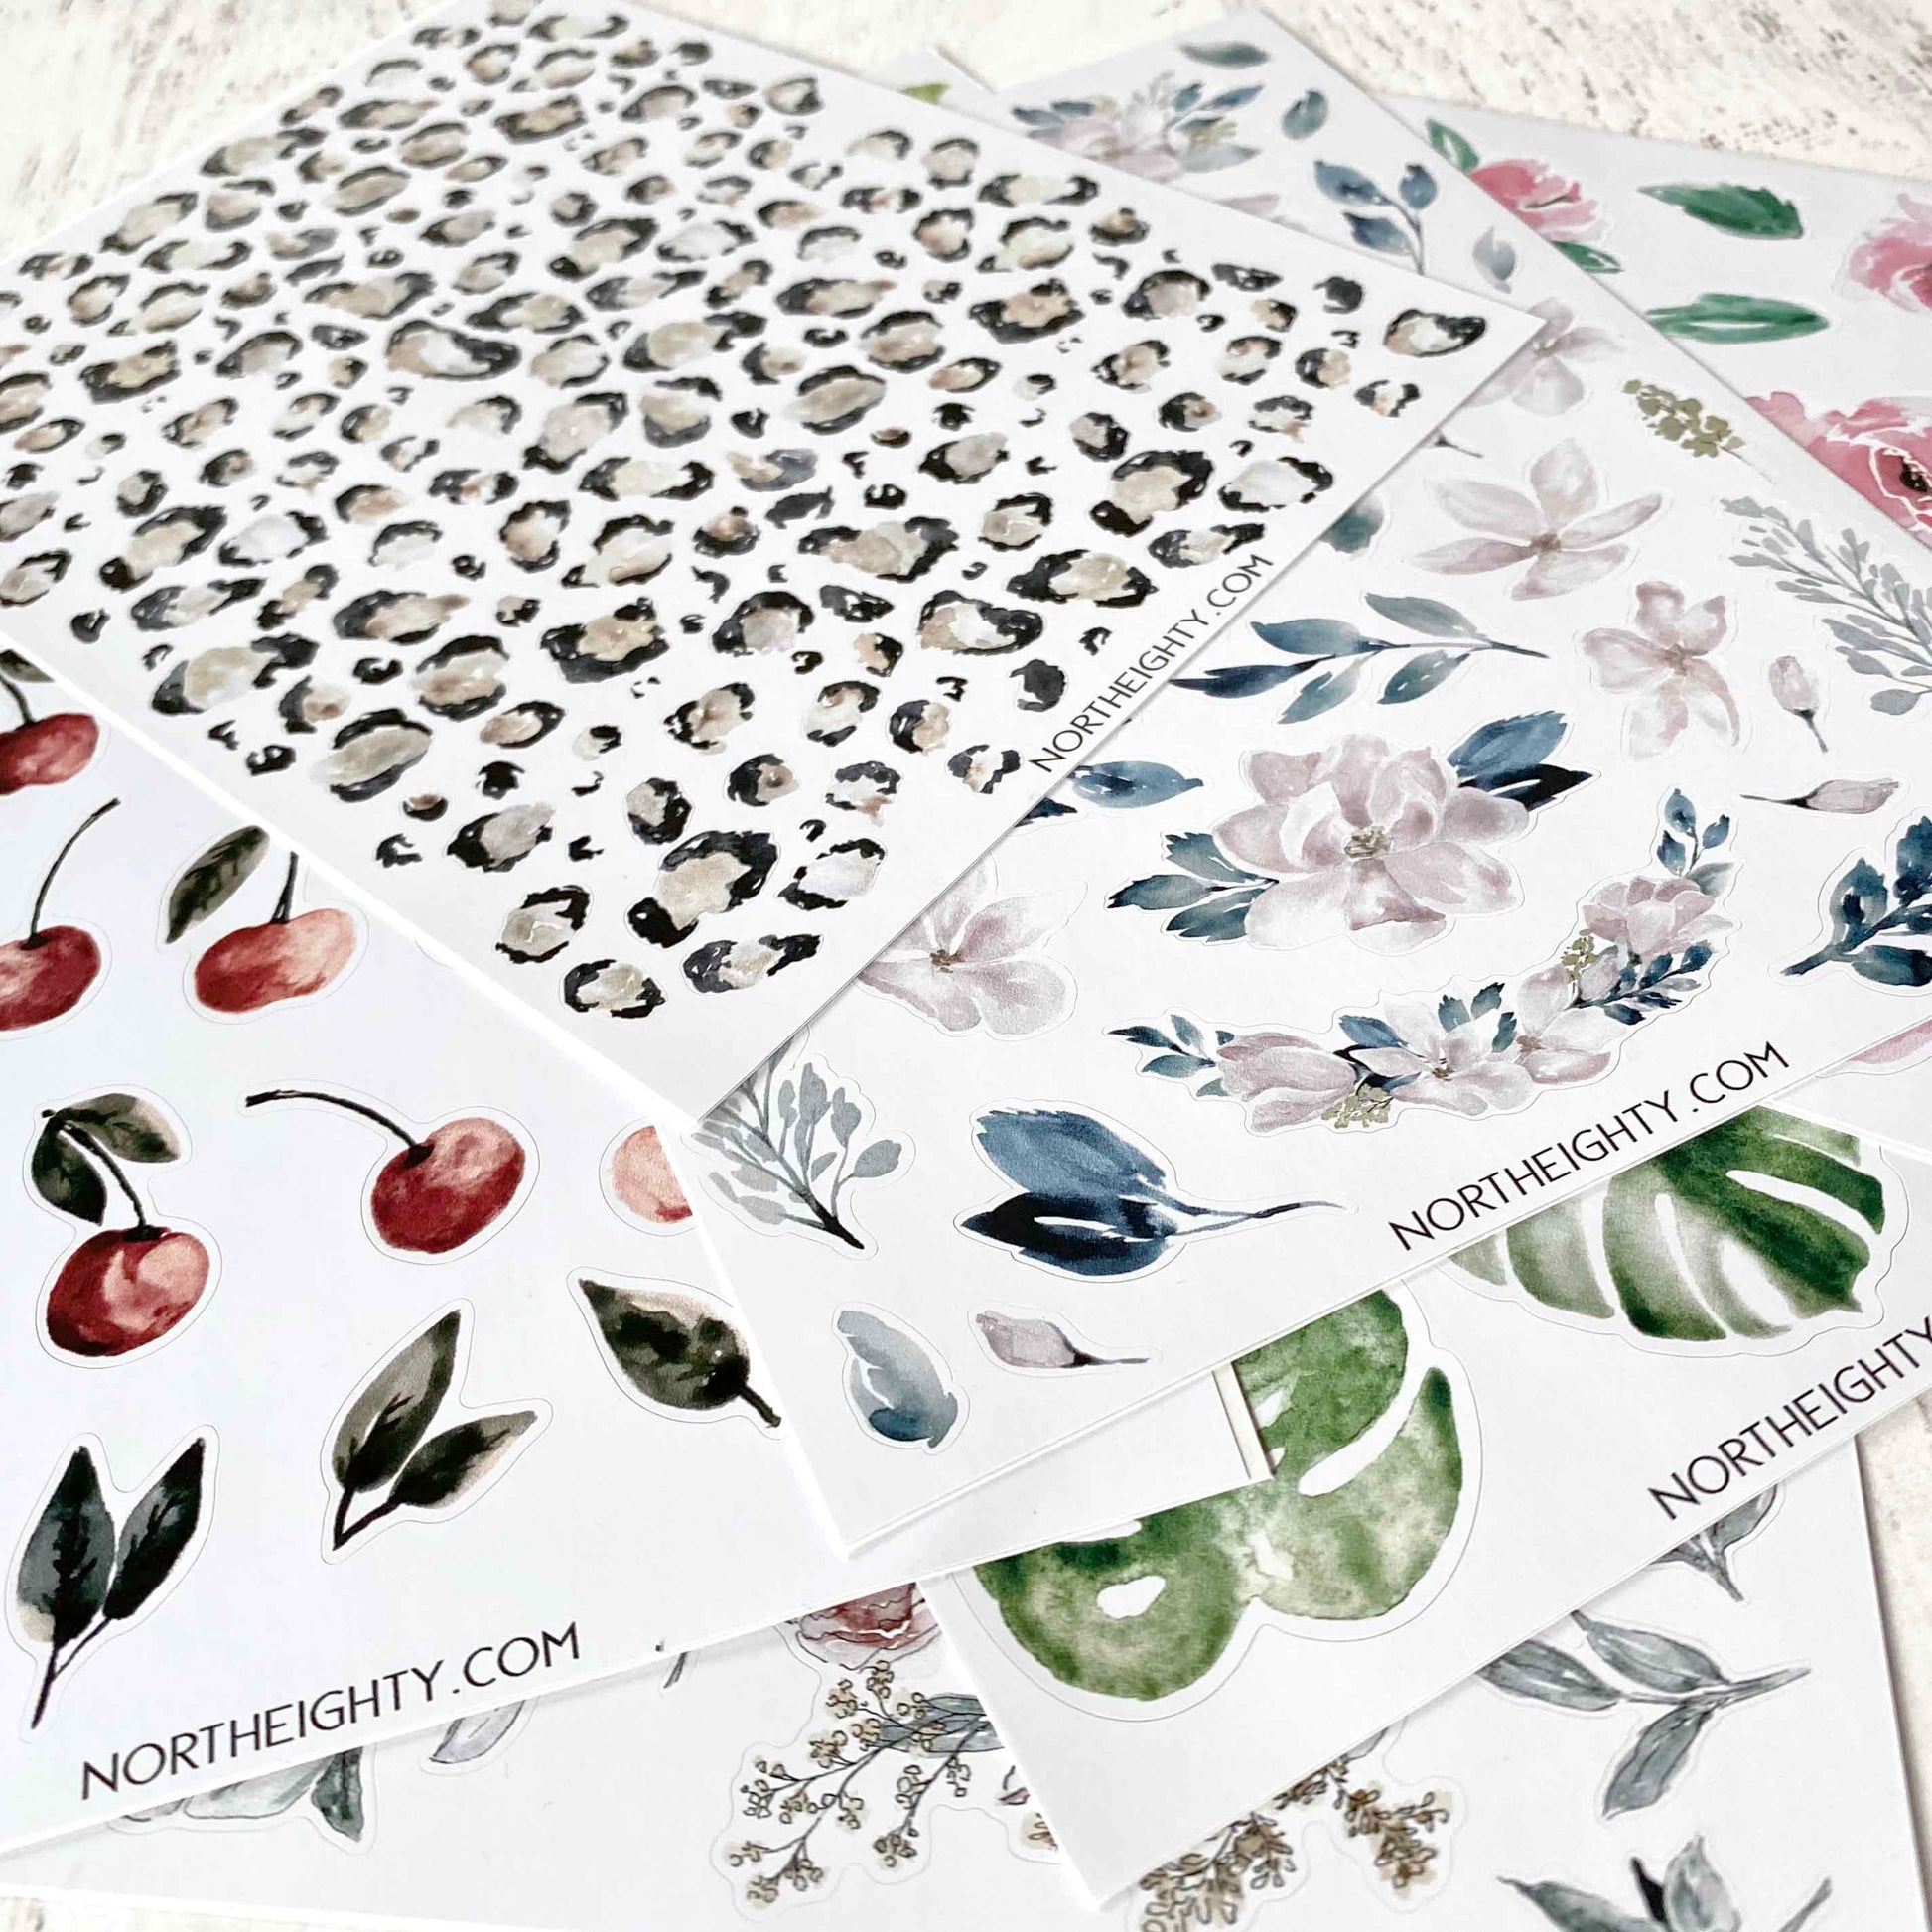 Floral Sticker Sheet - Vinyl Decals - Flower Sticker Pack - Waterproof - Laptop - Tumbler Decals